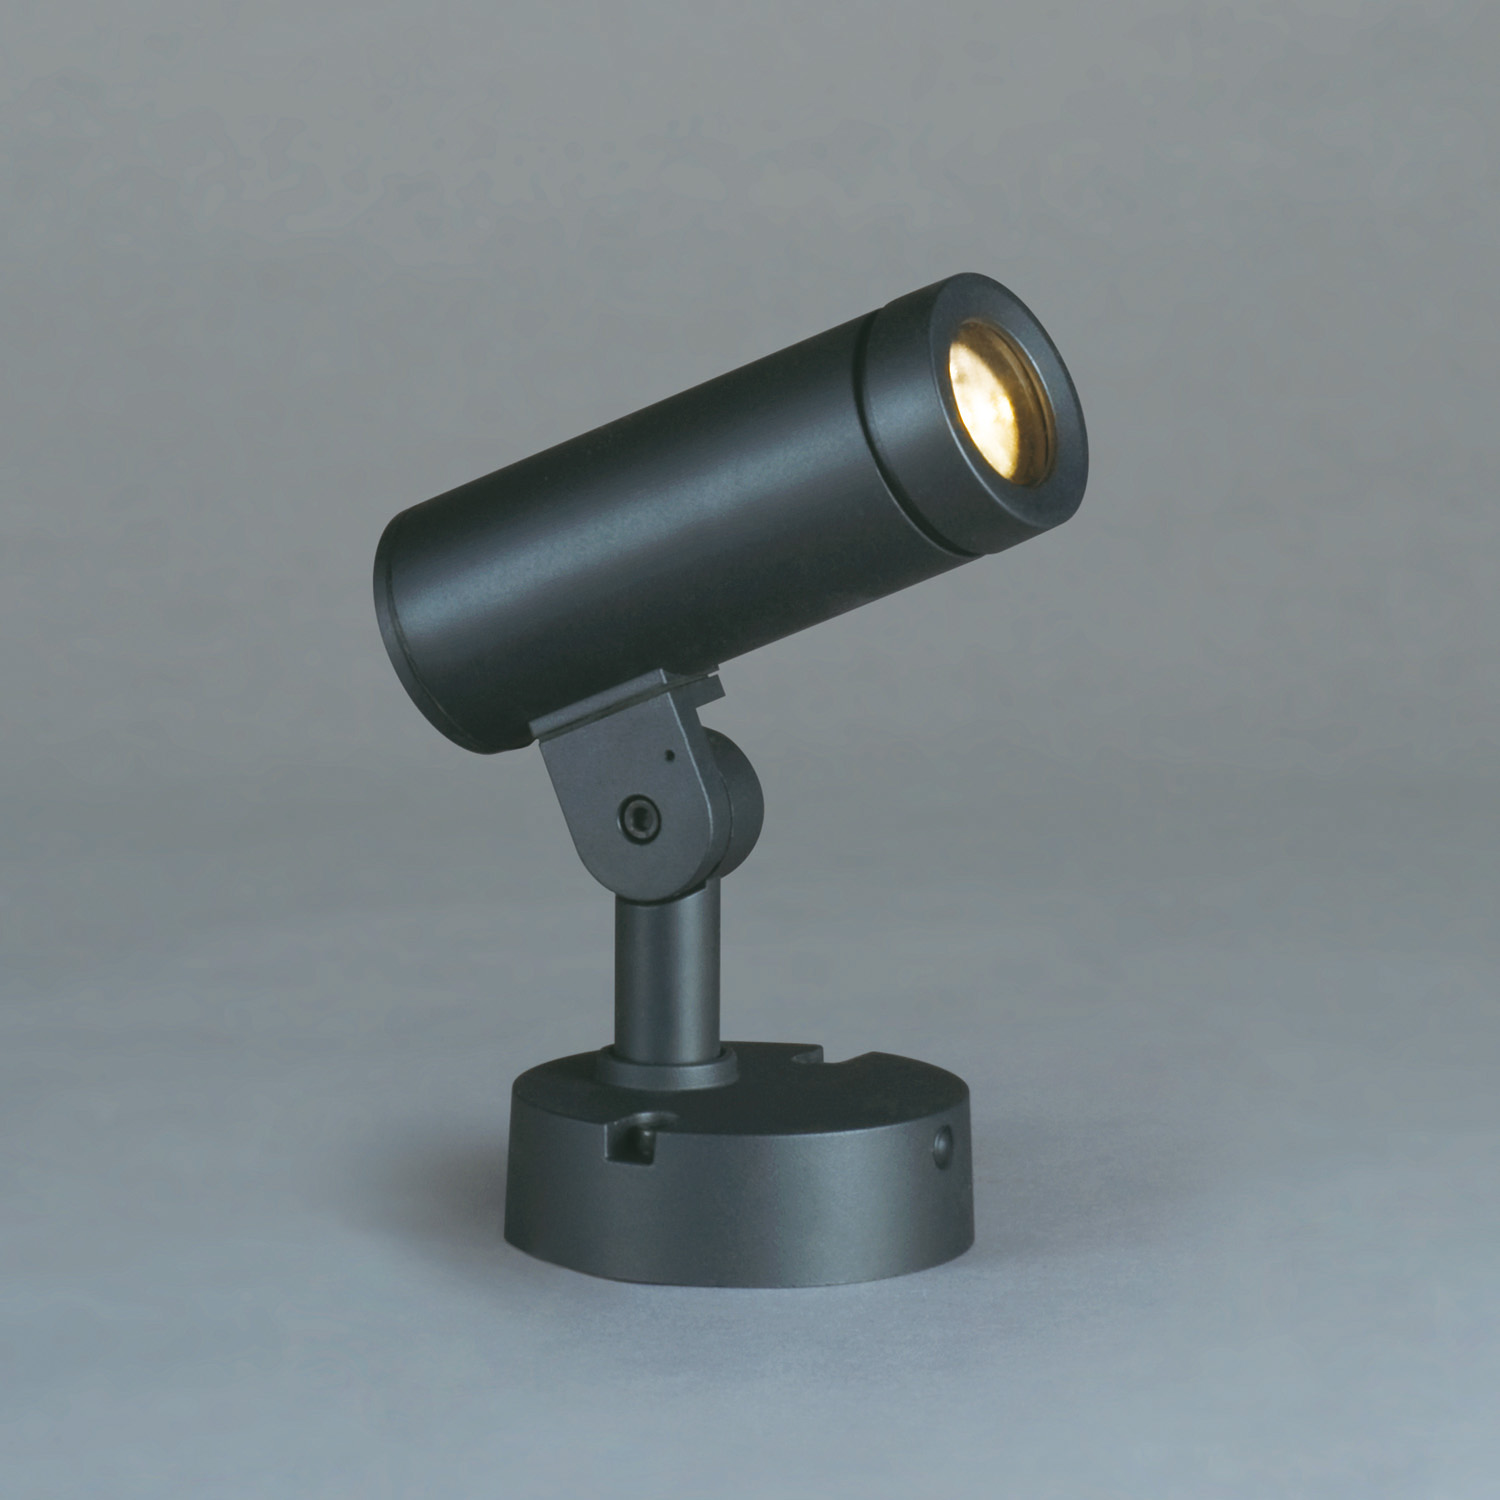 山田照明 山田照明 Compact Spot Neo（コンパクト・スポット・ネオ） 屋外用スポットライト 黒色 LED（昼白色） 36度 AD-3144 -N